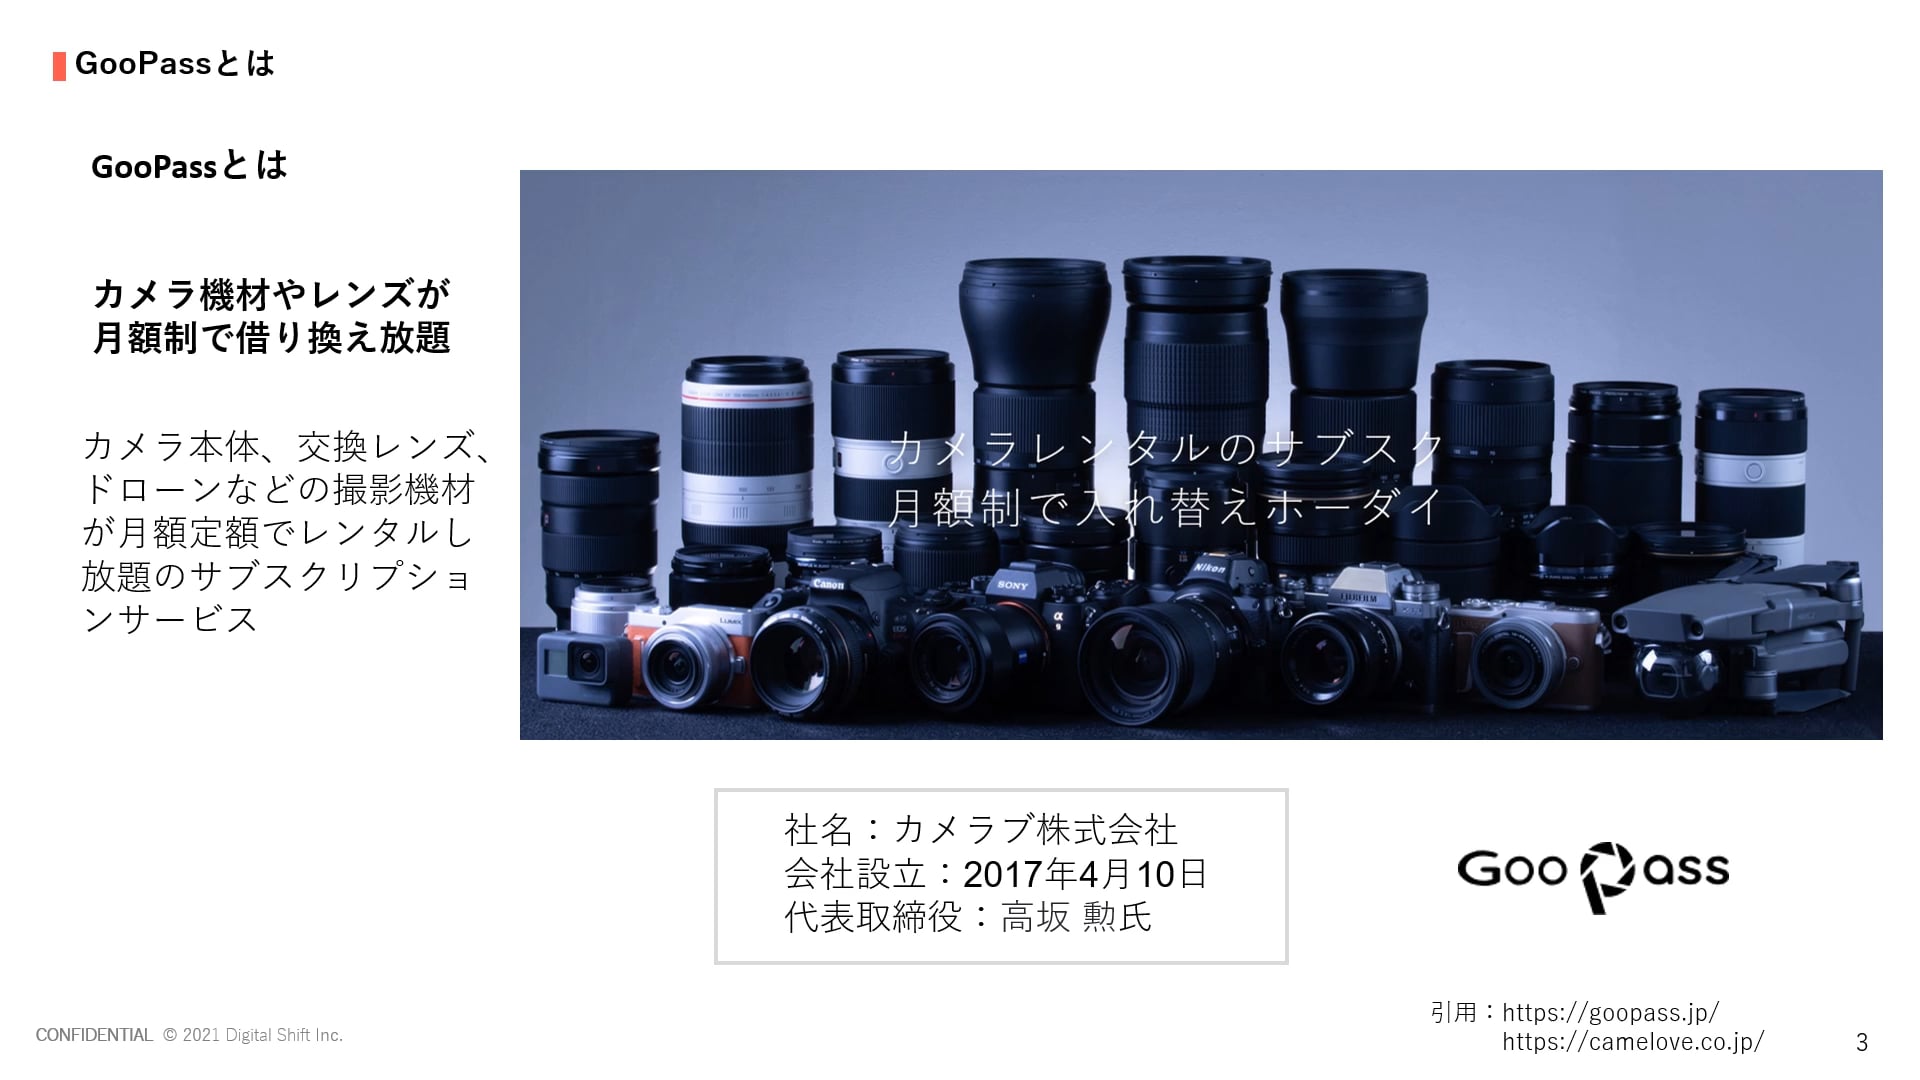 【サブスクビジネス事例】カメラ機材やレンズのサブスクリプション「GooPass」